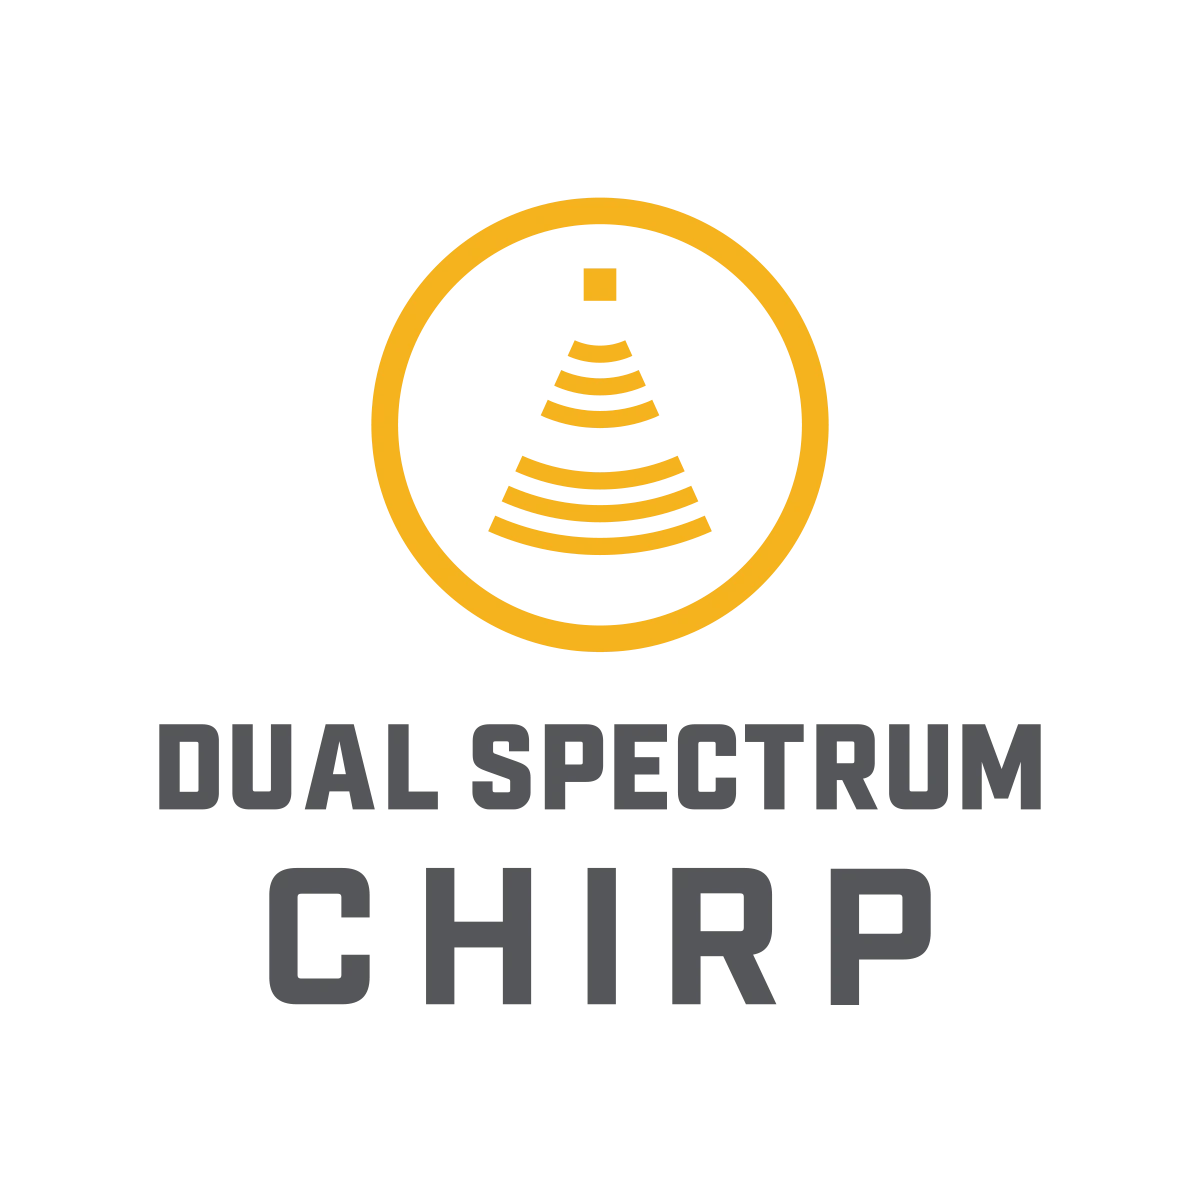 Dual Spectrum CHIRP